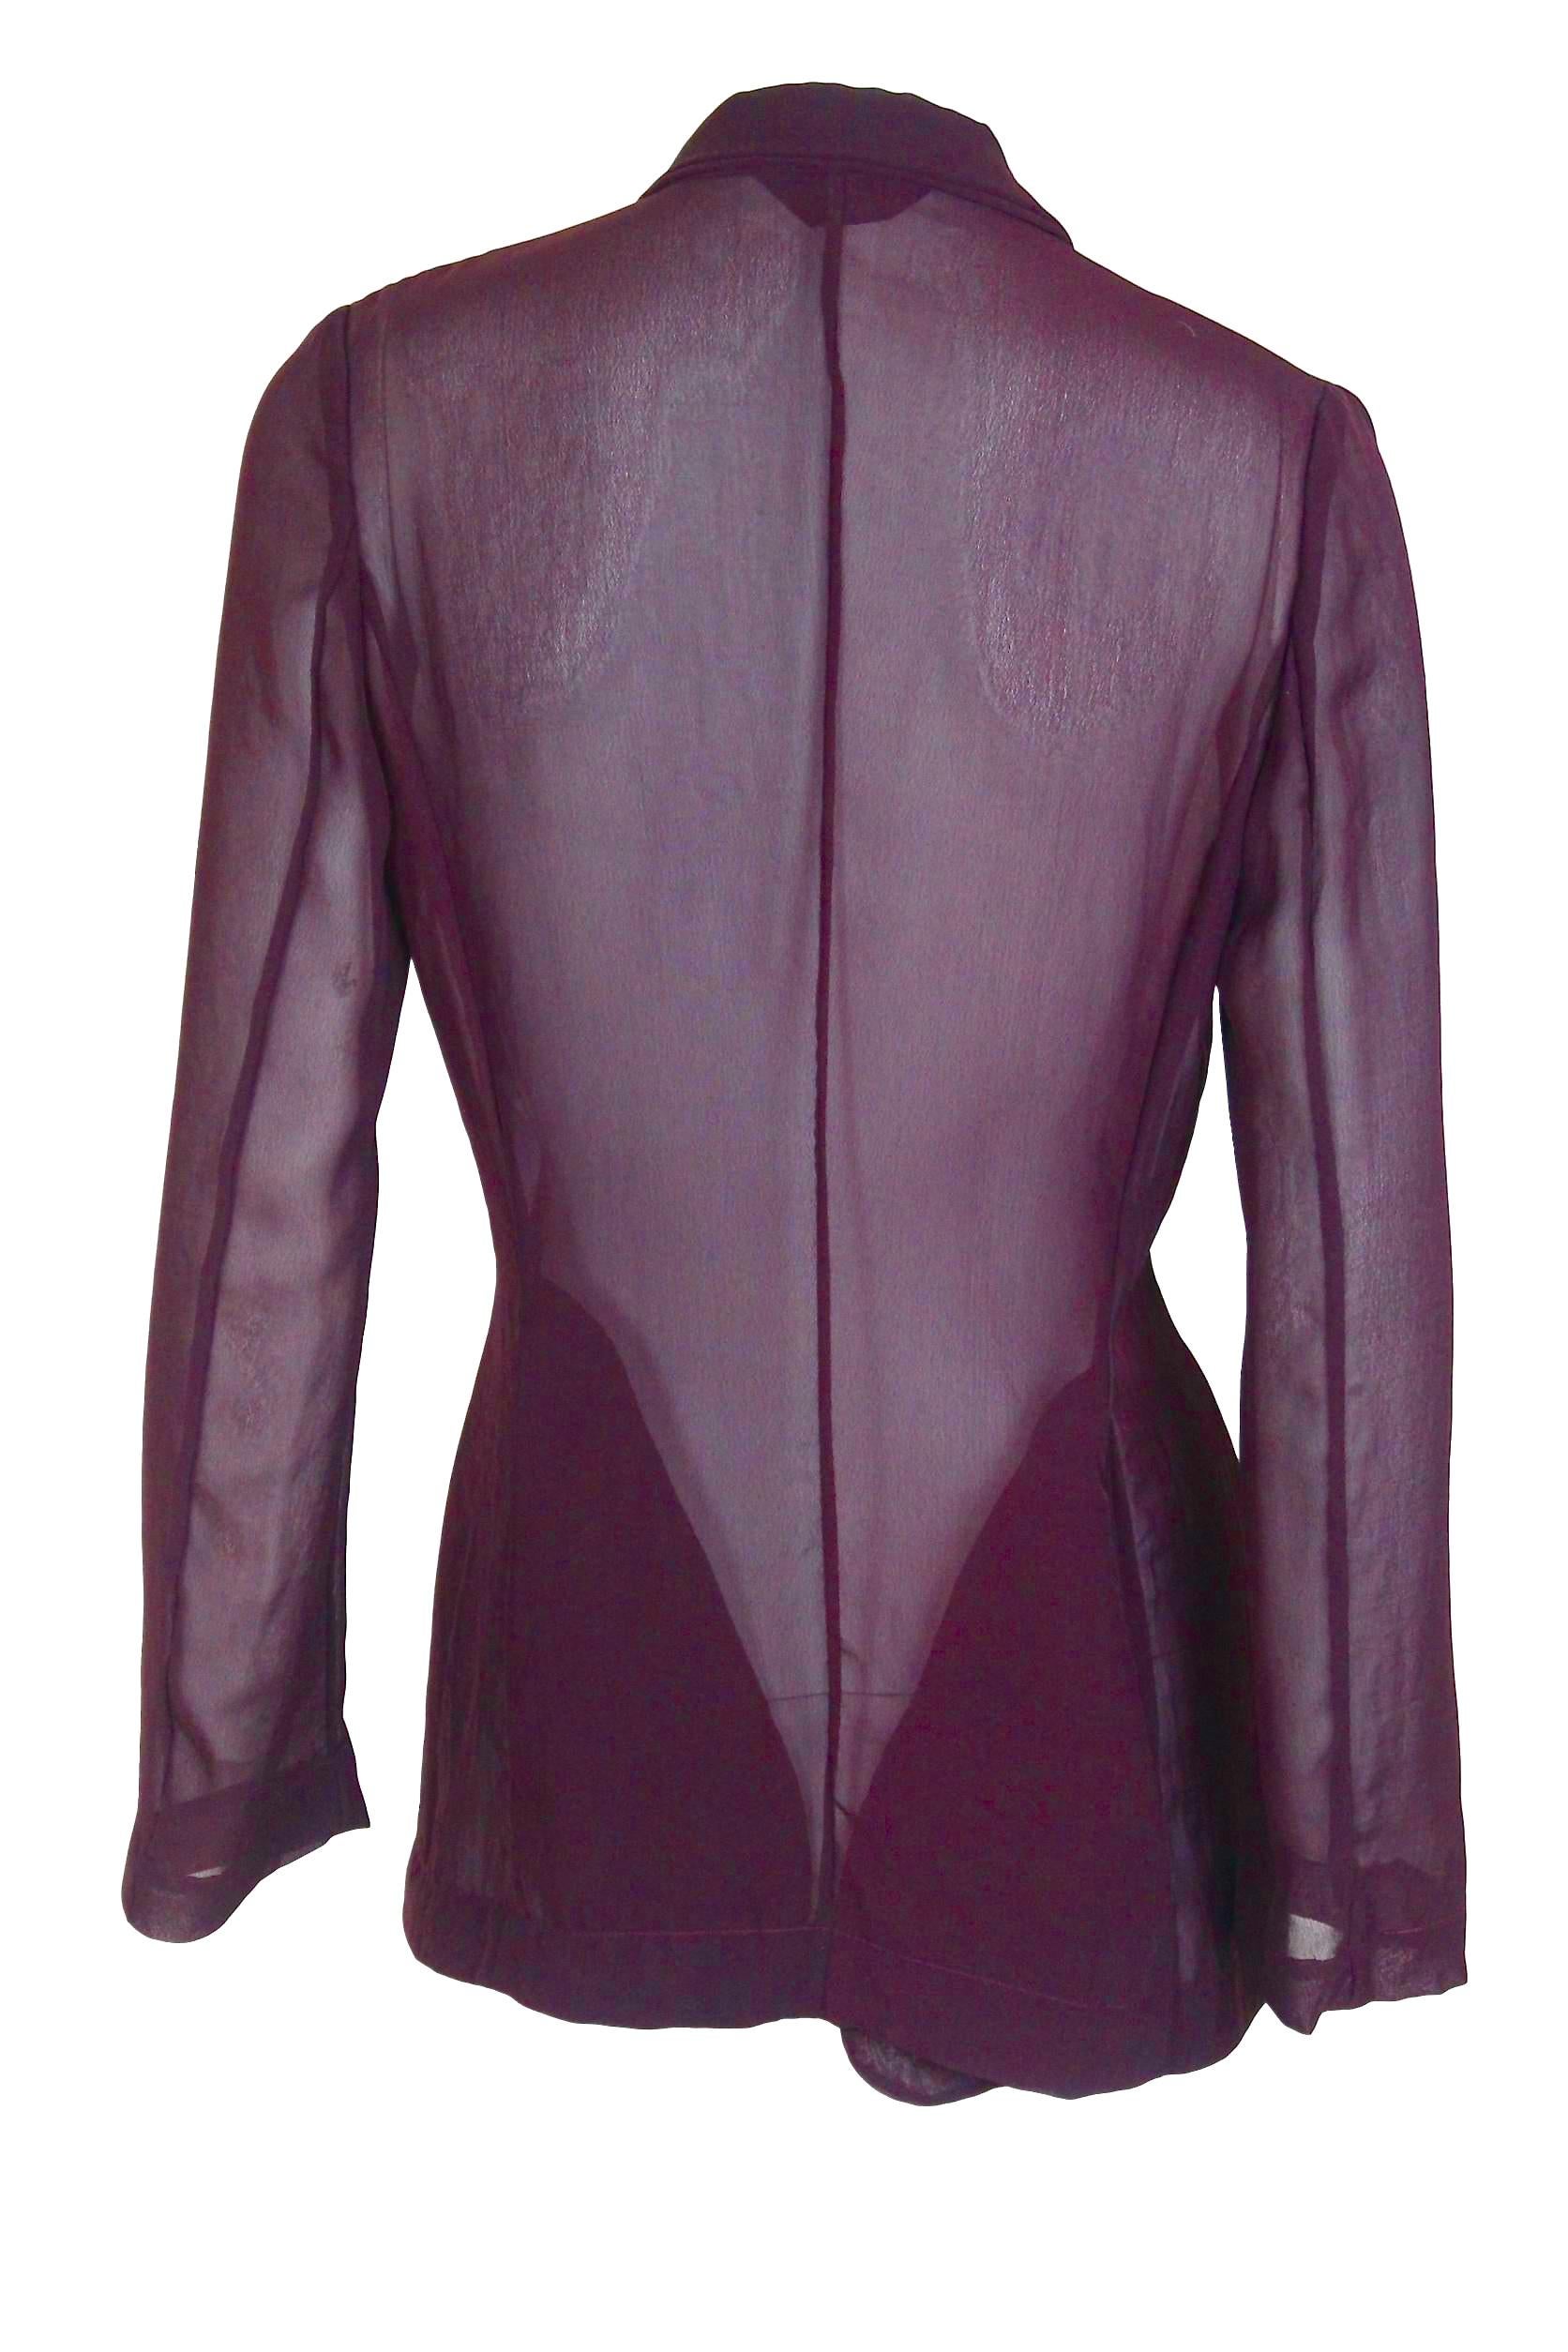 Black Comme des Garcons AD 1992 Semi Transparent Voile Jacket For Sale